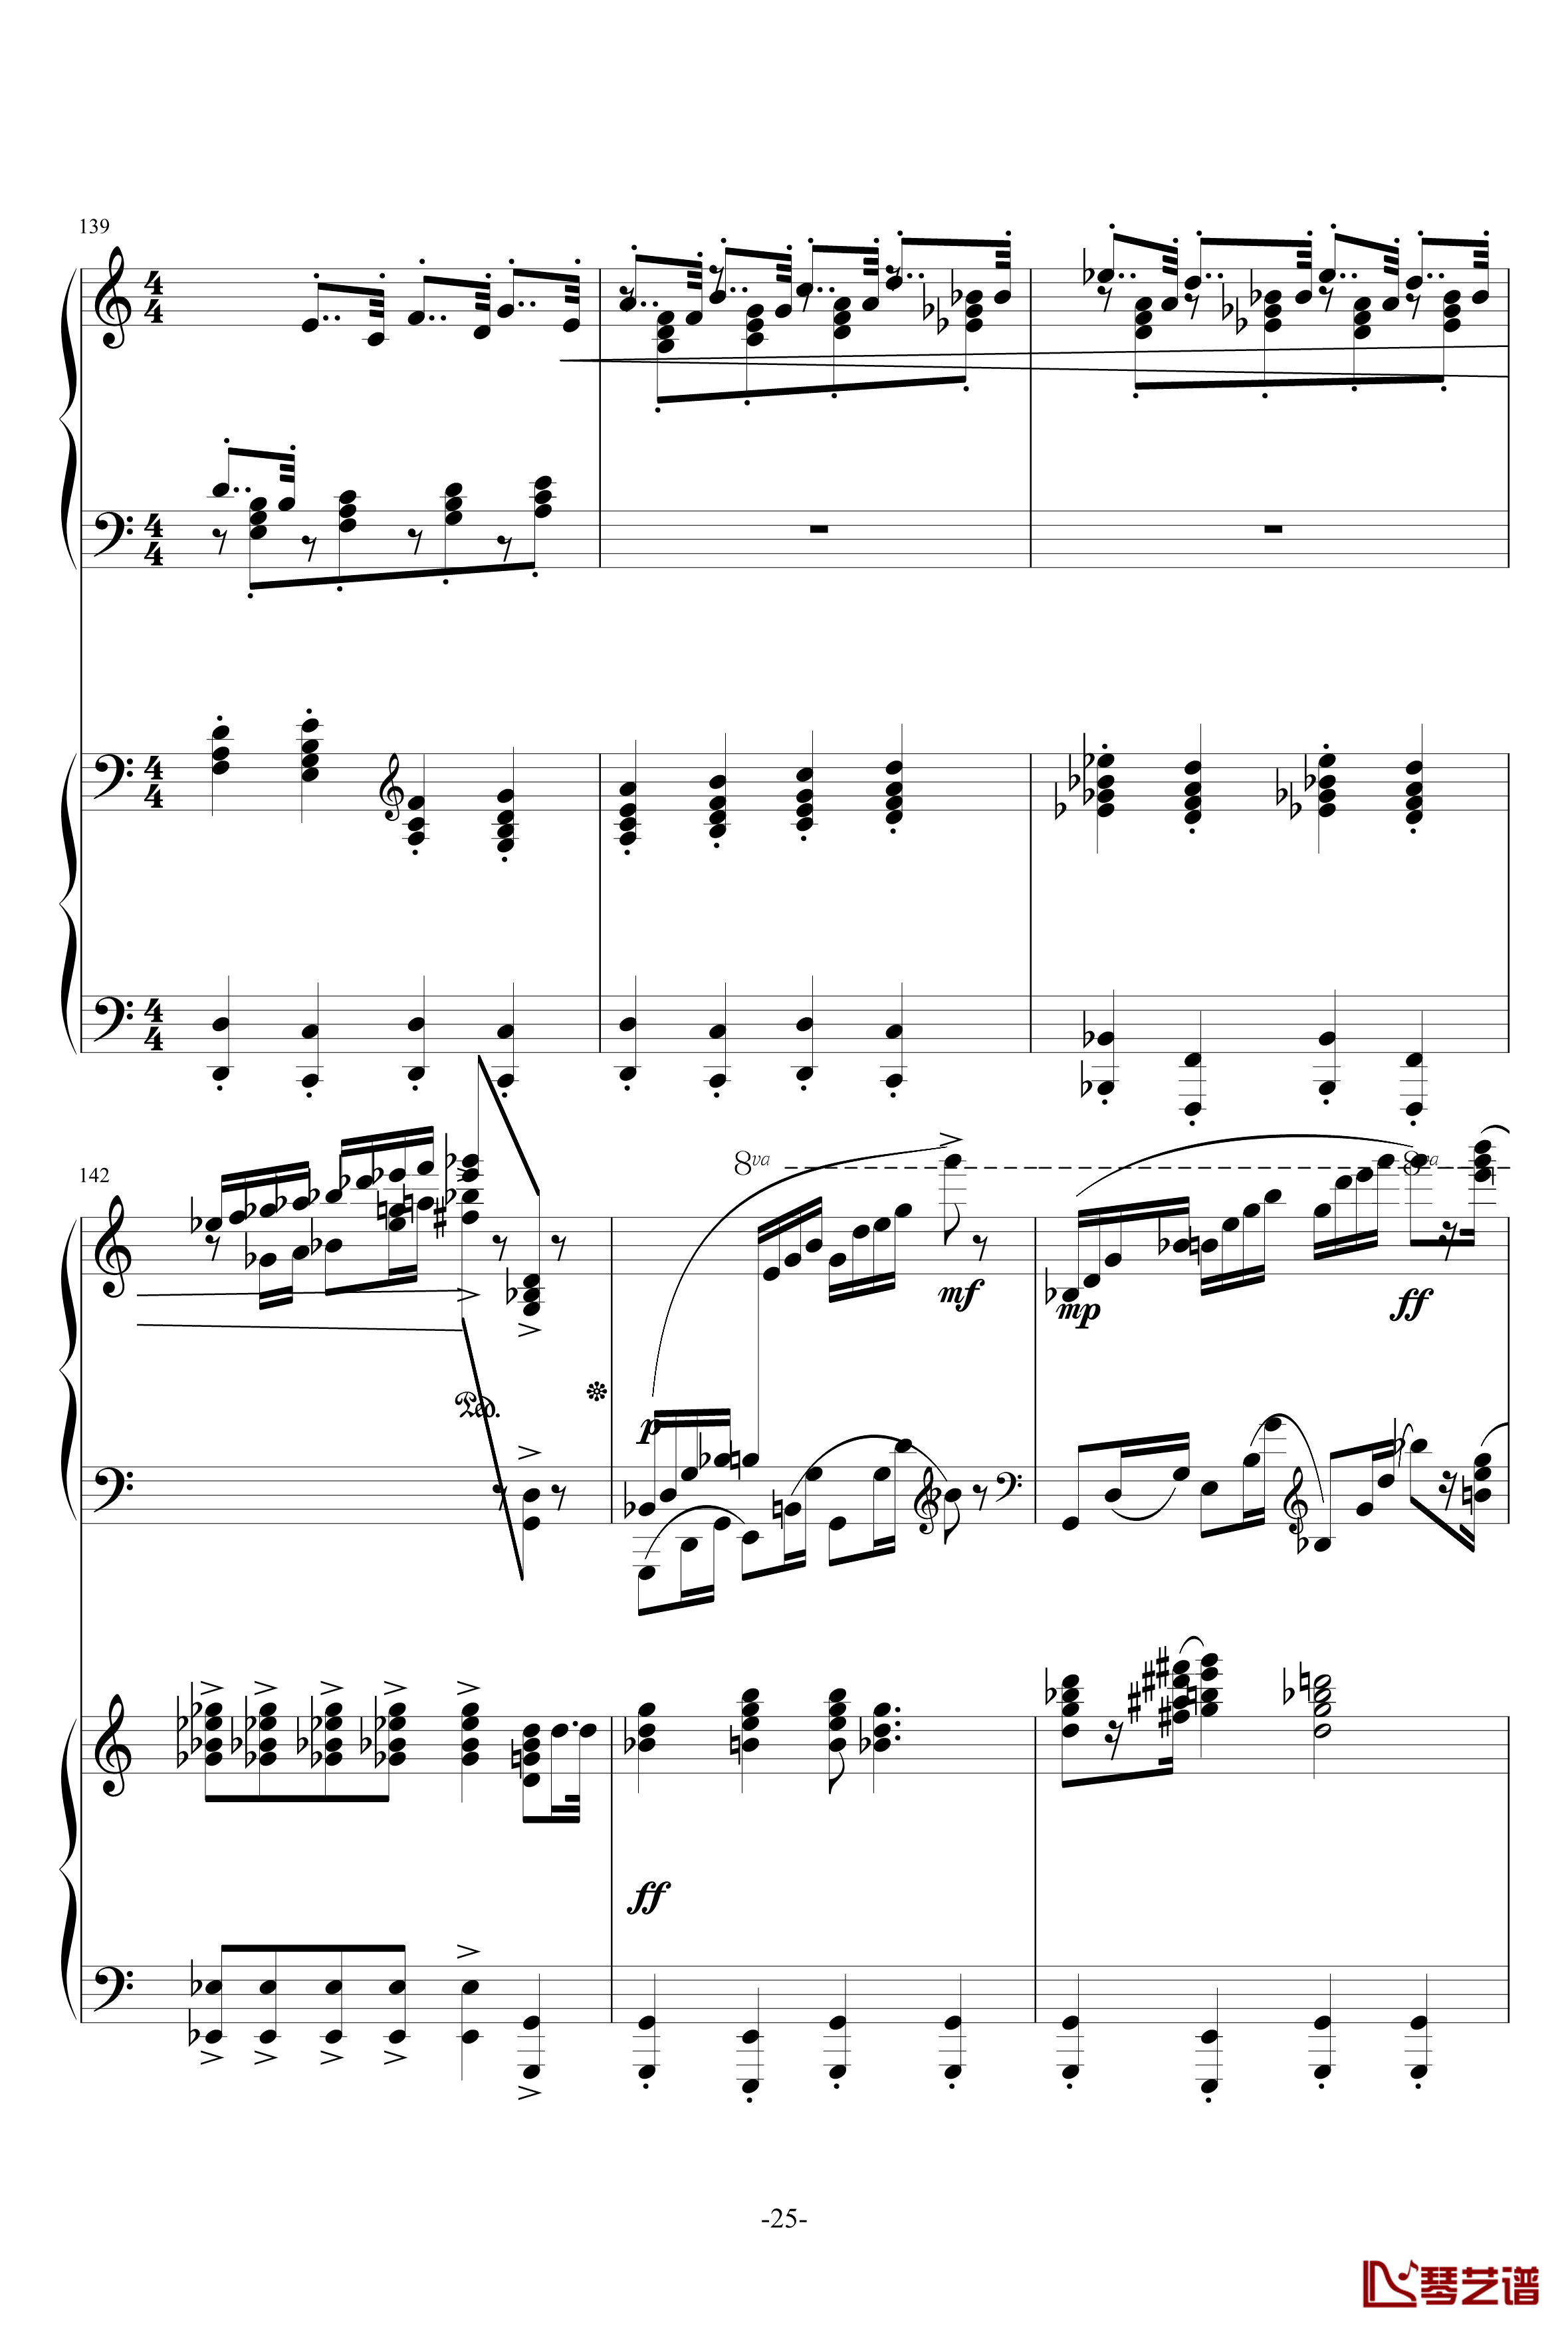 普罗科菲耶夫第三钢琴协奏曲第二乐章钢琴谱25